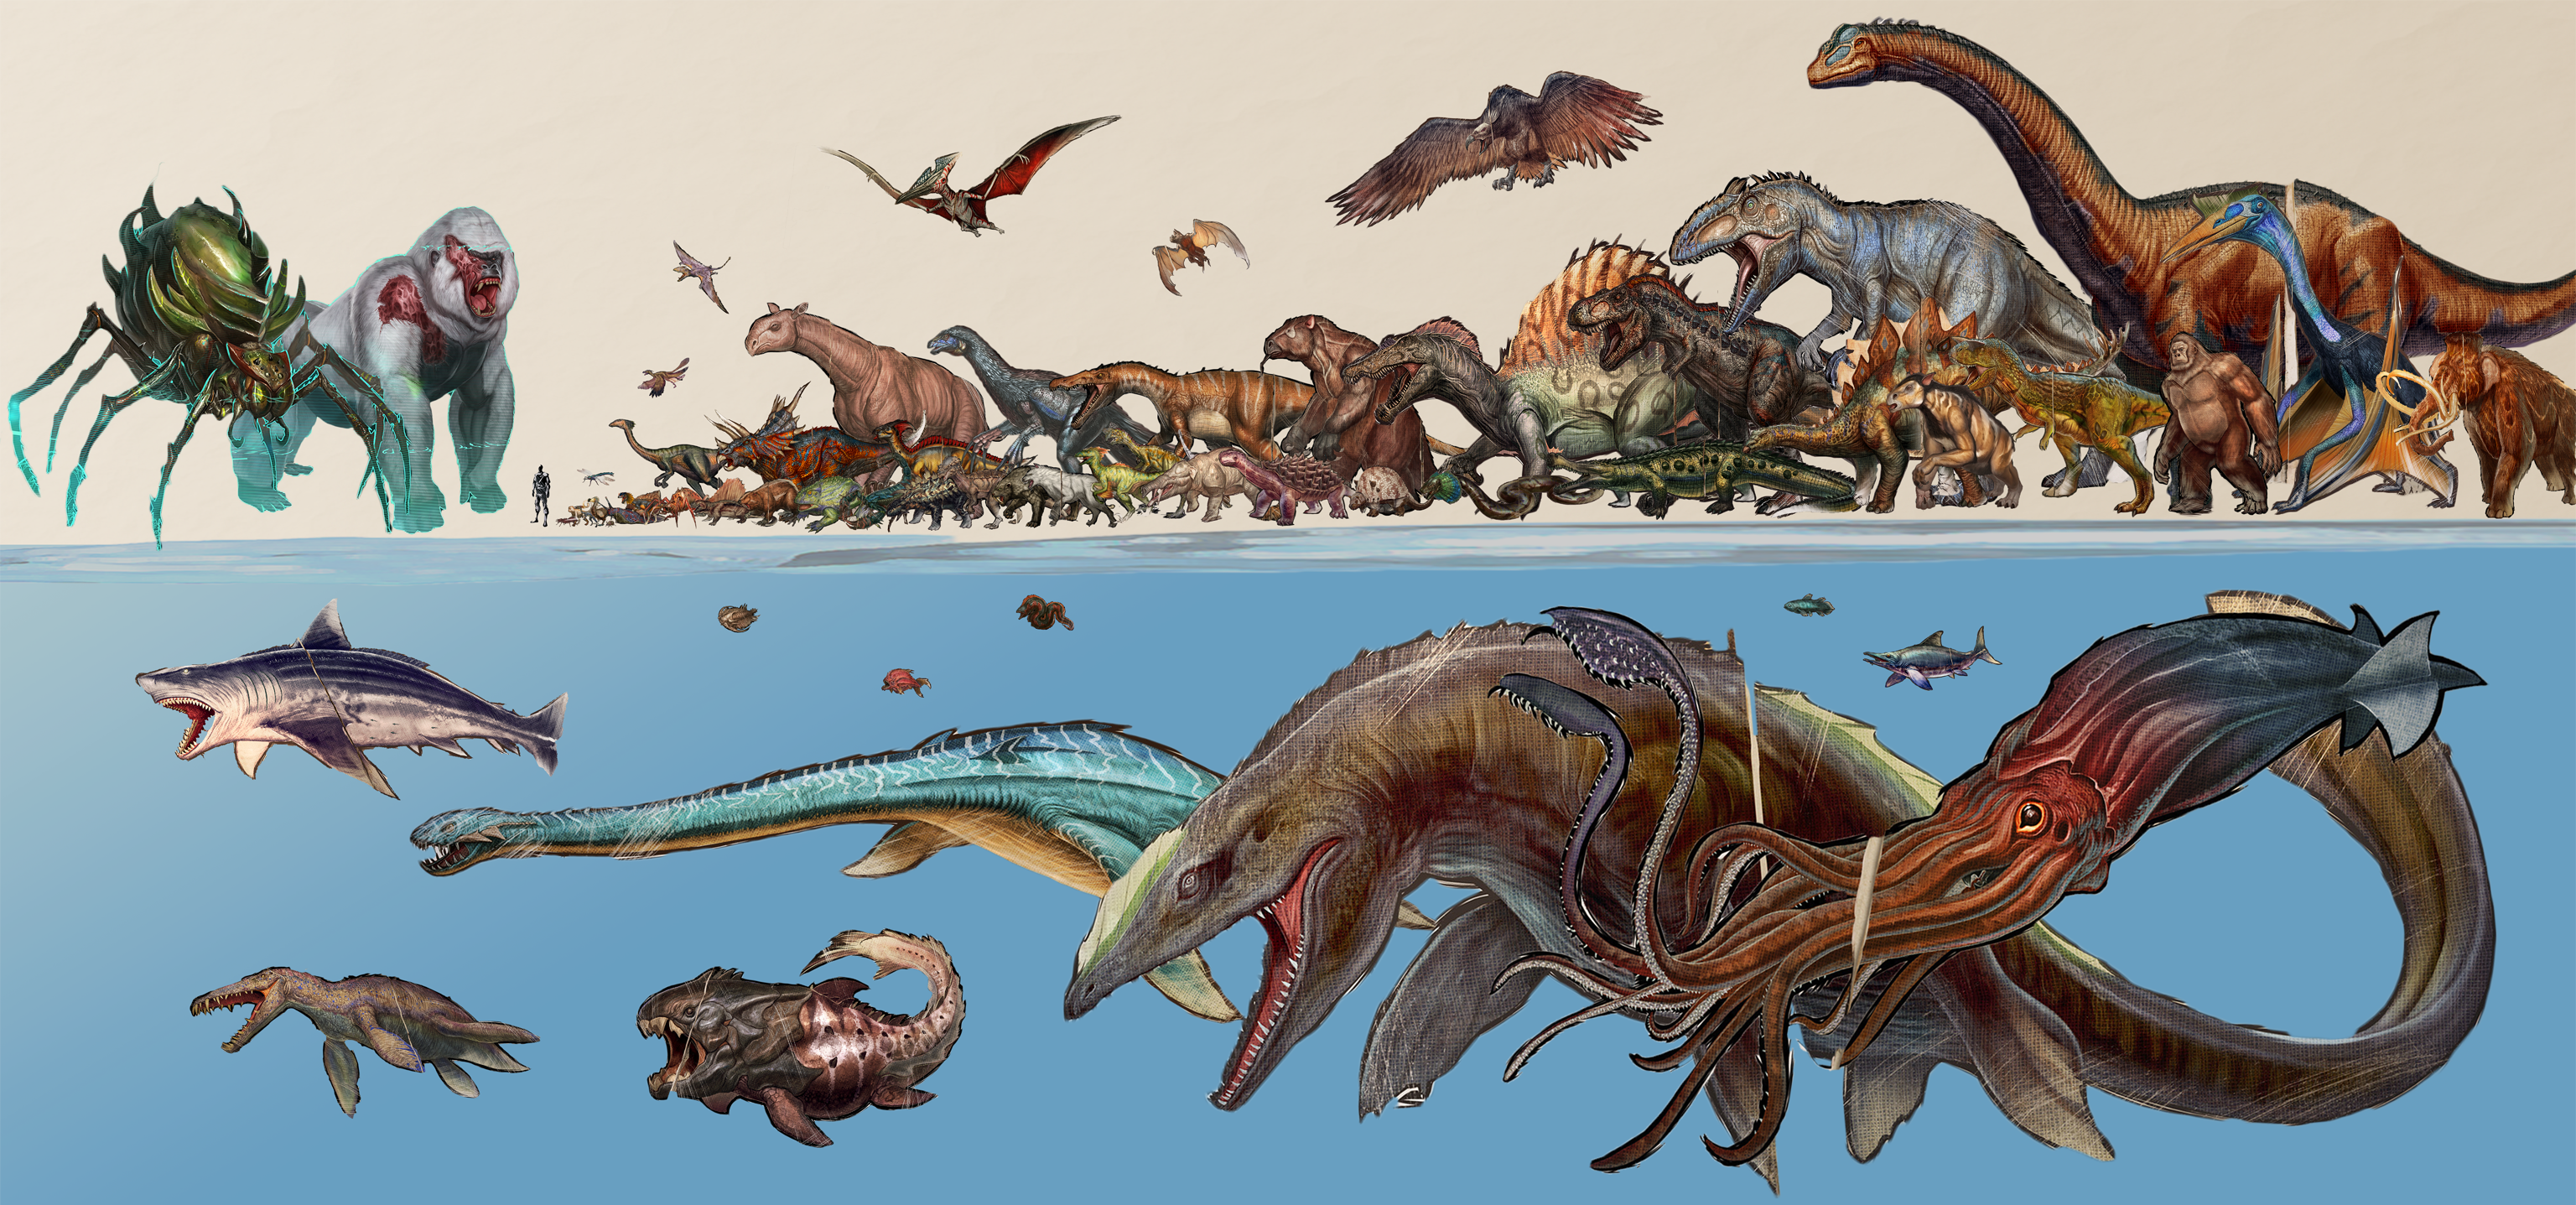 Морские существа АРК сурвайвал. АРК сурвайвал динозавры. Сущесива гиганты АРК СУРВАЙВЛ. Мозазавр мир Юрского периода.